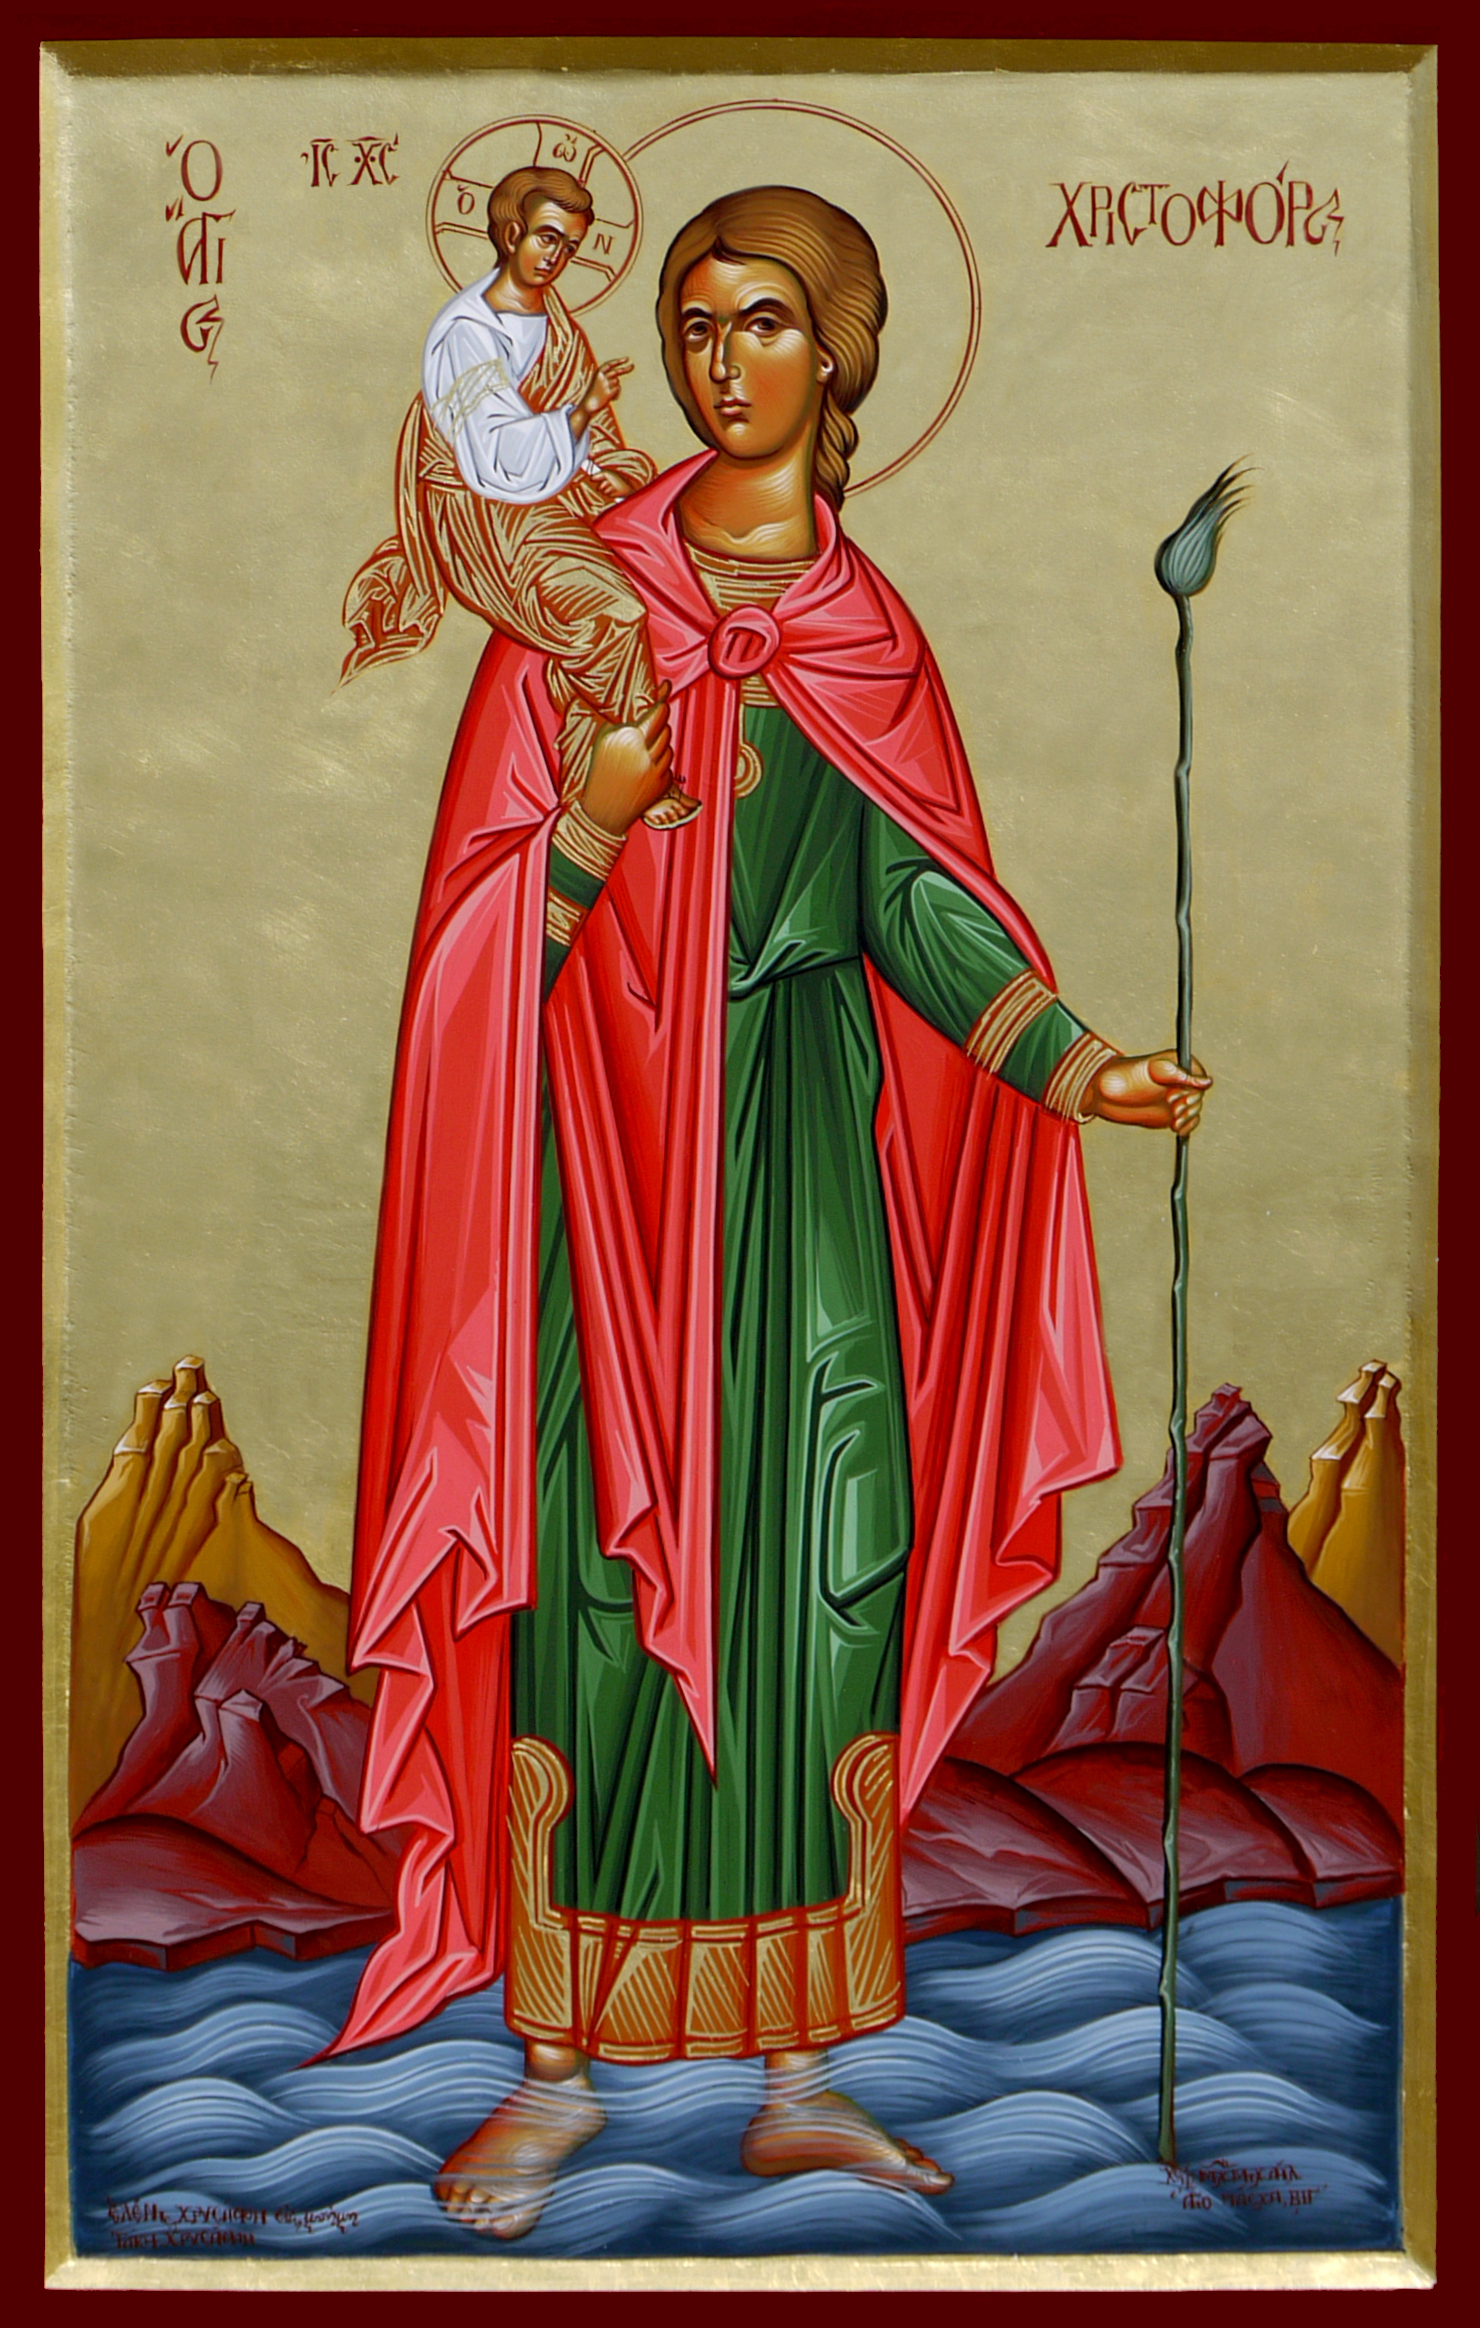 Άγιος Χριστόφορος ο Μεγαλομάρτυρας, St. Christopher the Martyr, Святого Христофора мученика